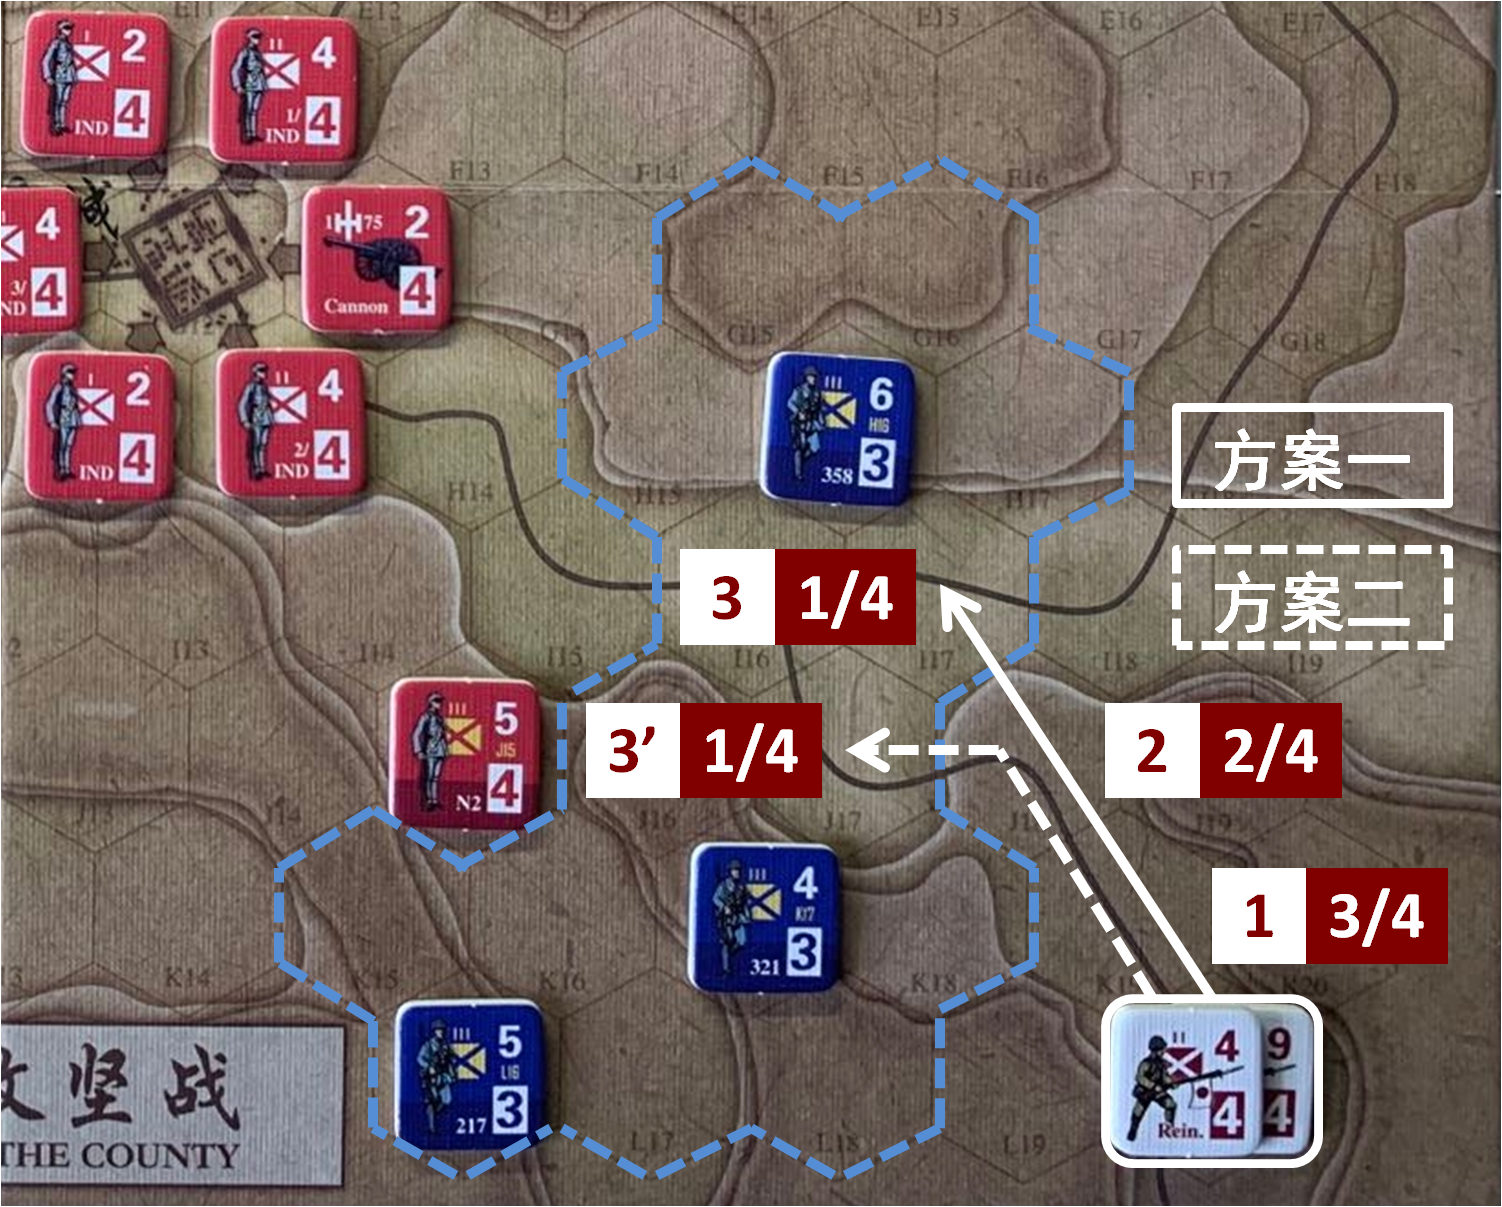 如果国军所有部队保持初设位置不变（H16、K17、L16），至本回合日方移动阶段时，初始位于路羊方向（L20）的日军增援部队可能采取的移动方案及国军部队控制区覆盖范围